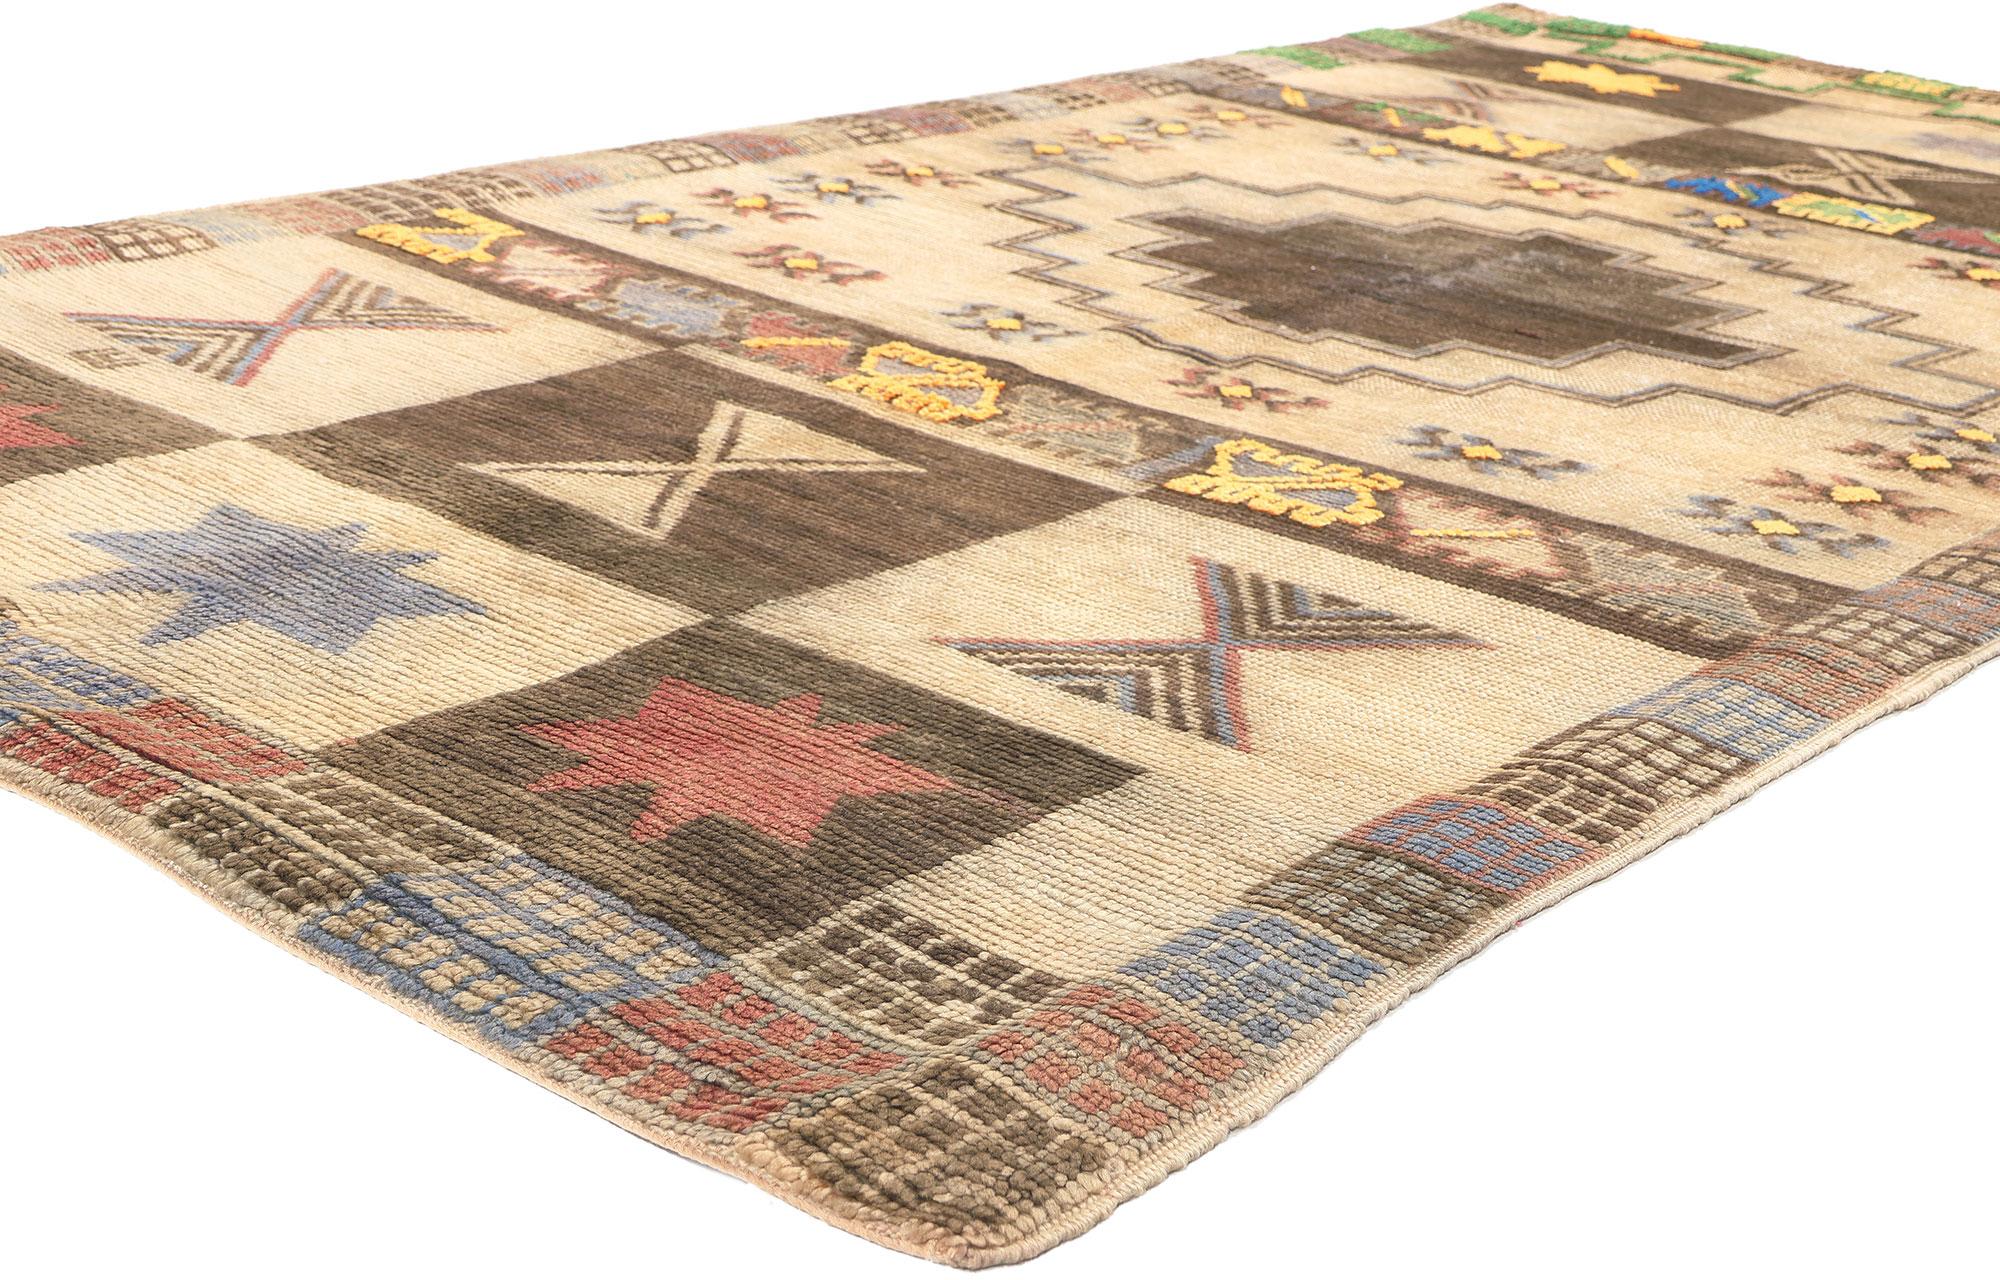 20471 Tapis marocain Vintage Taznakht, 04'09 x 09'00. 
Ce tapis marocain Taznakht vintage en laine noué à la main est un tapis tissé avec des styles distinctifs, créant des motifs géométriques envoûtants qui font écho à la riche histoire culturelle